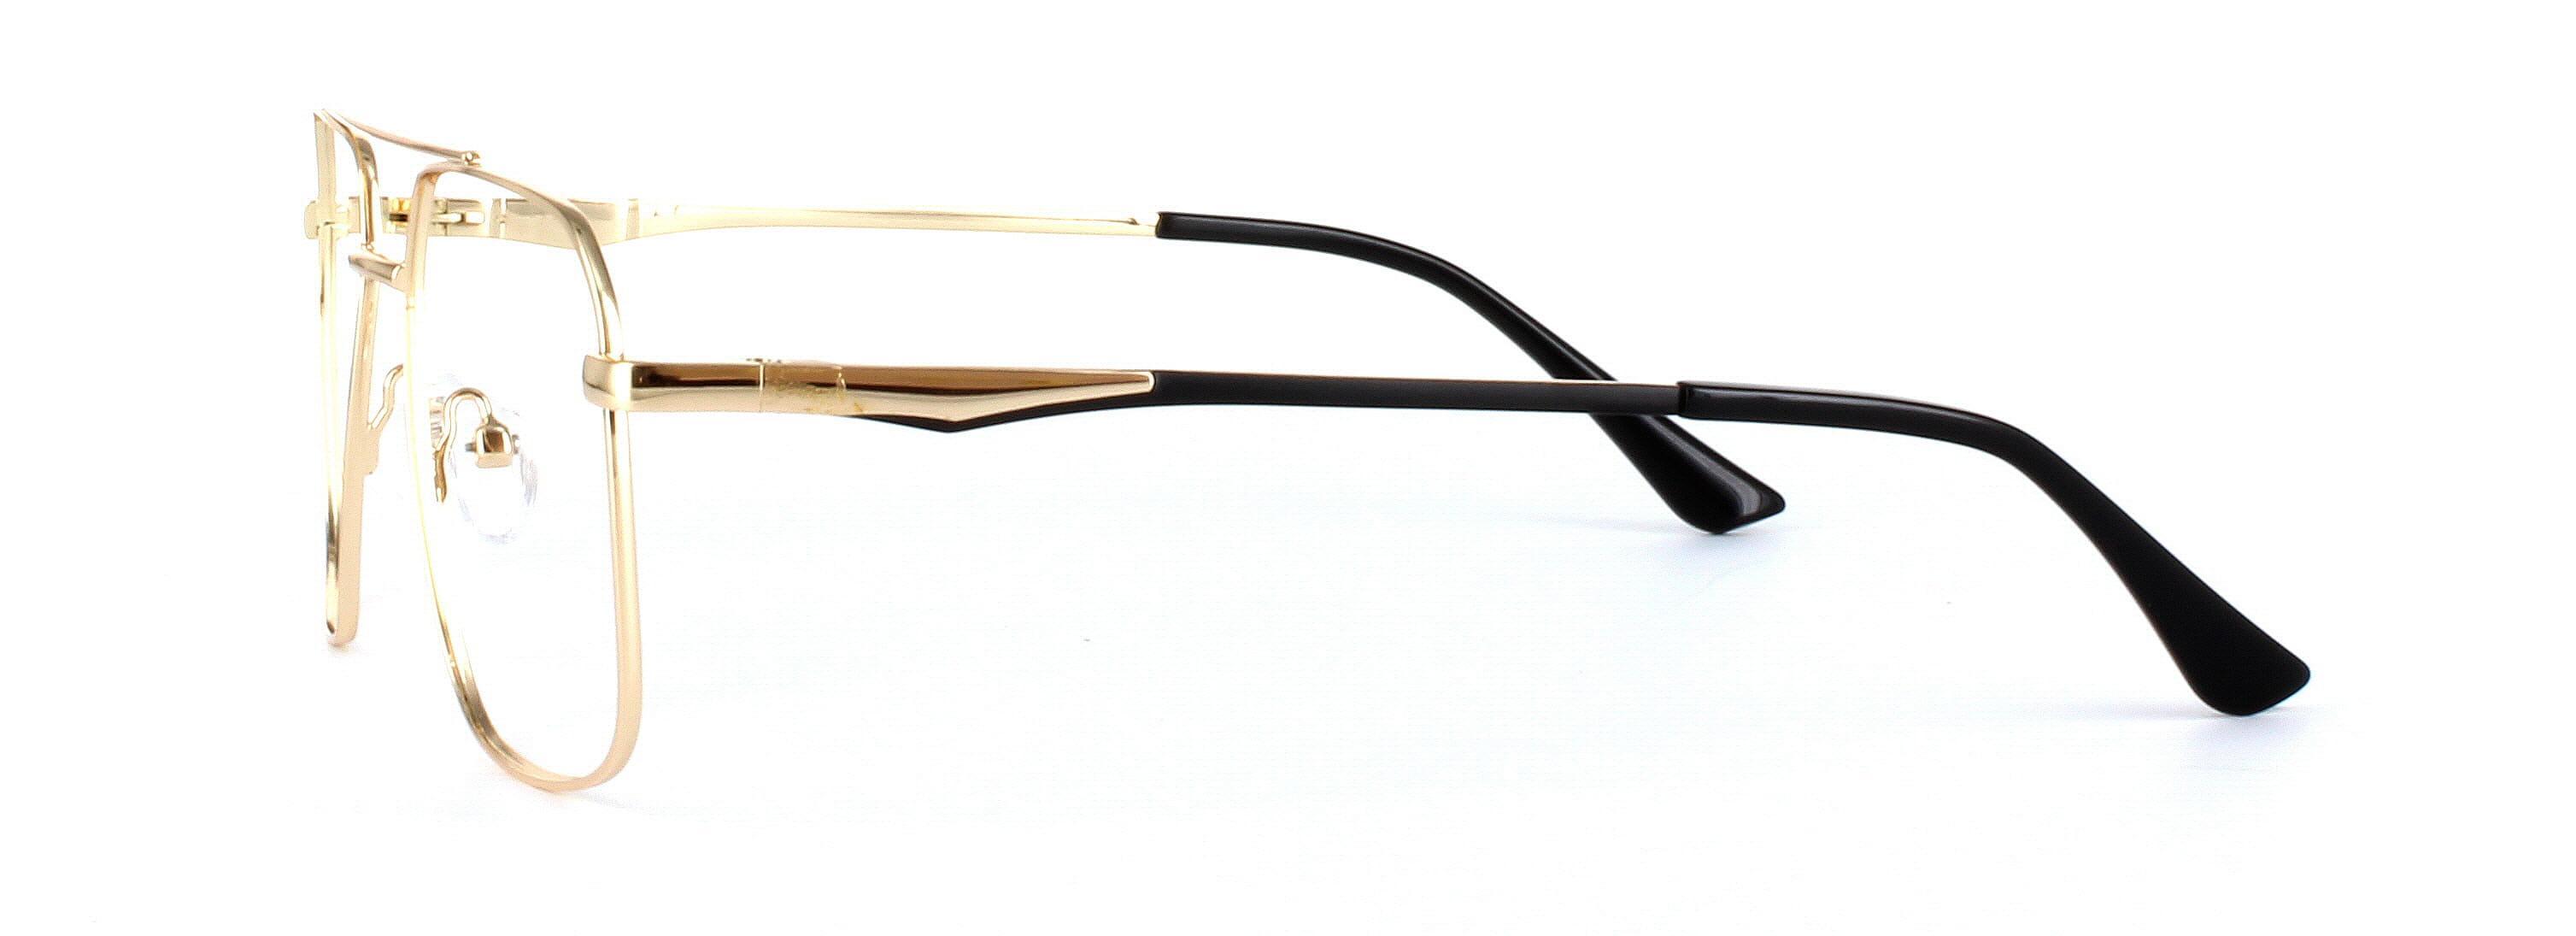 Caludon Gold Full Rim Aviator Metal Glasses - Image View 2